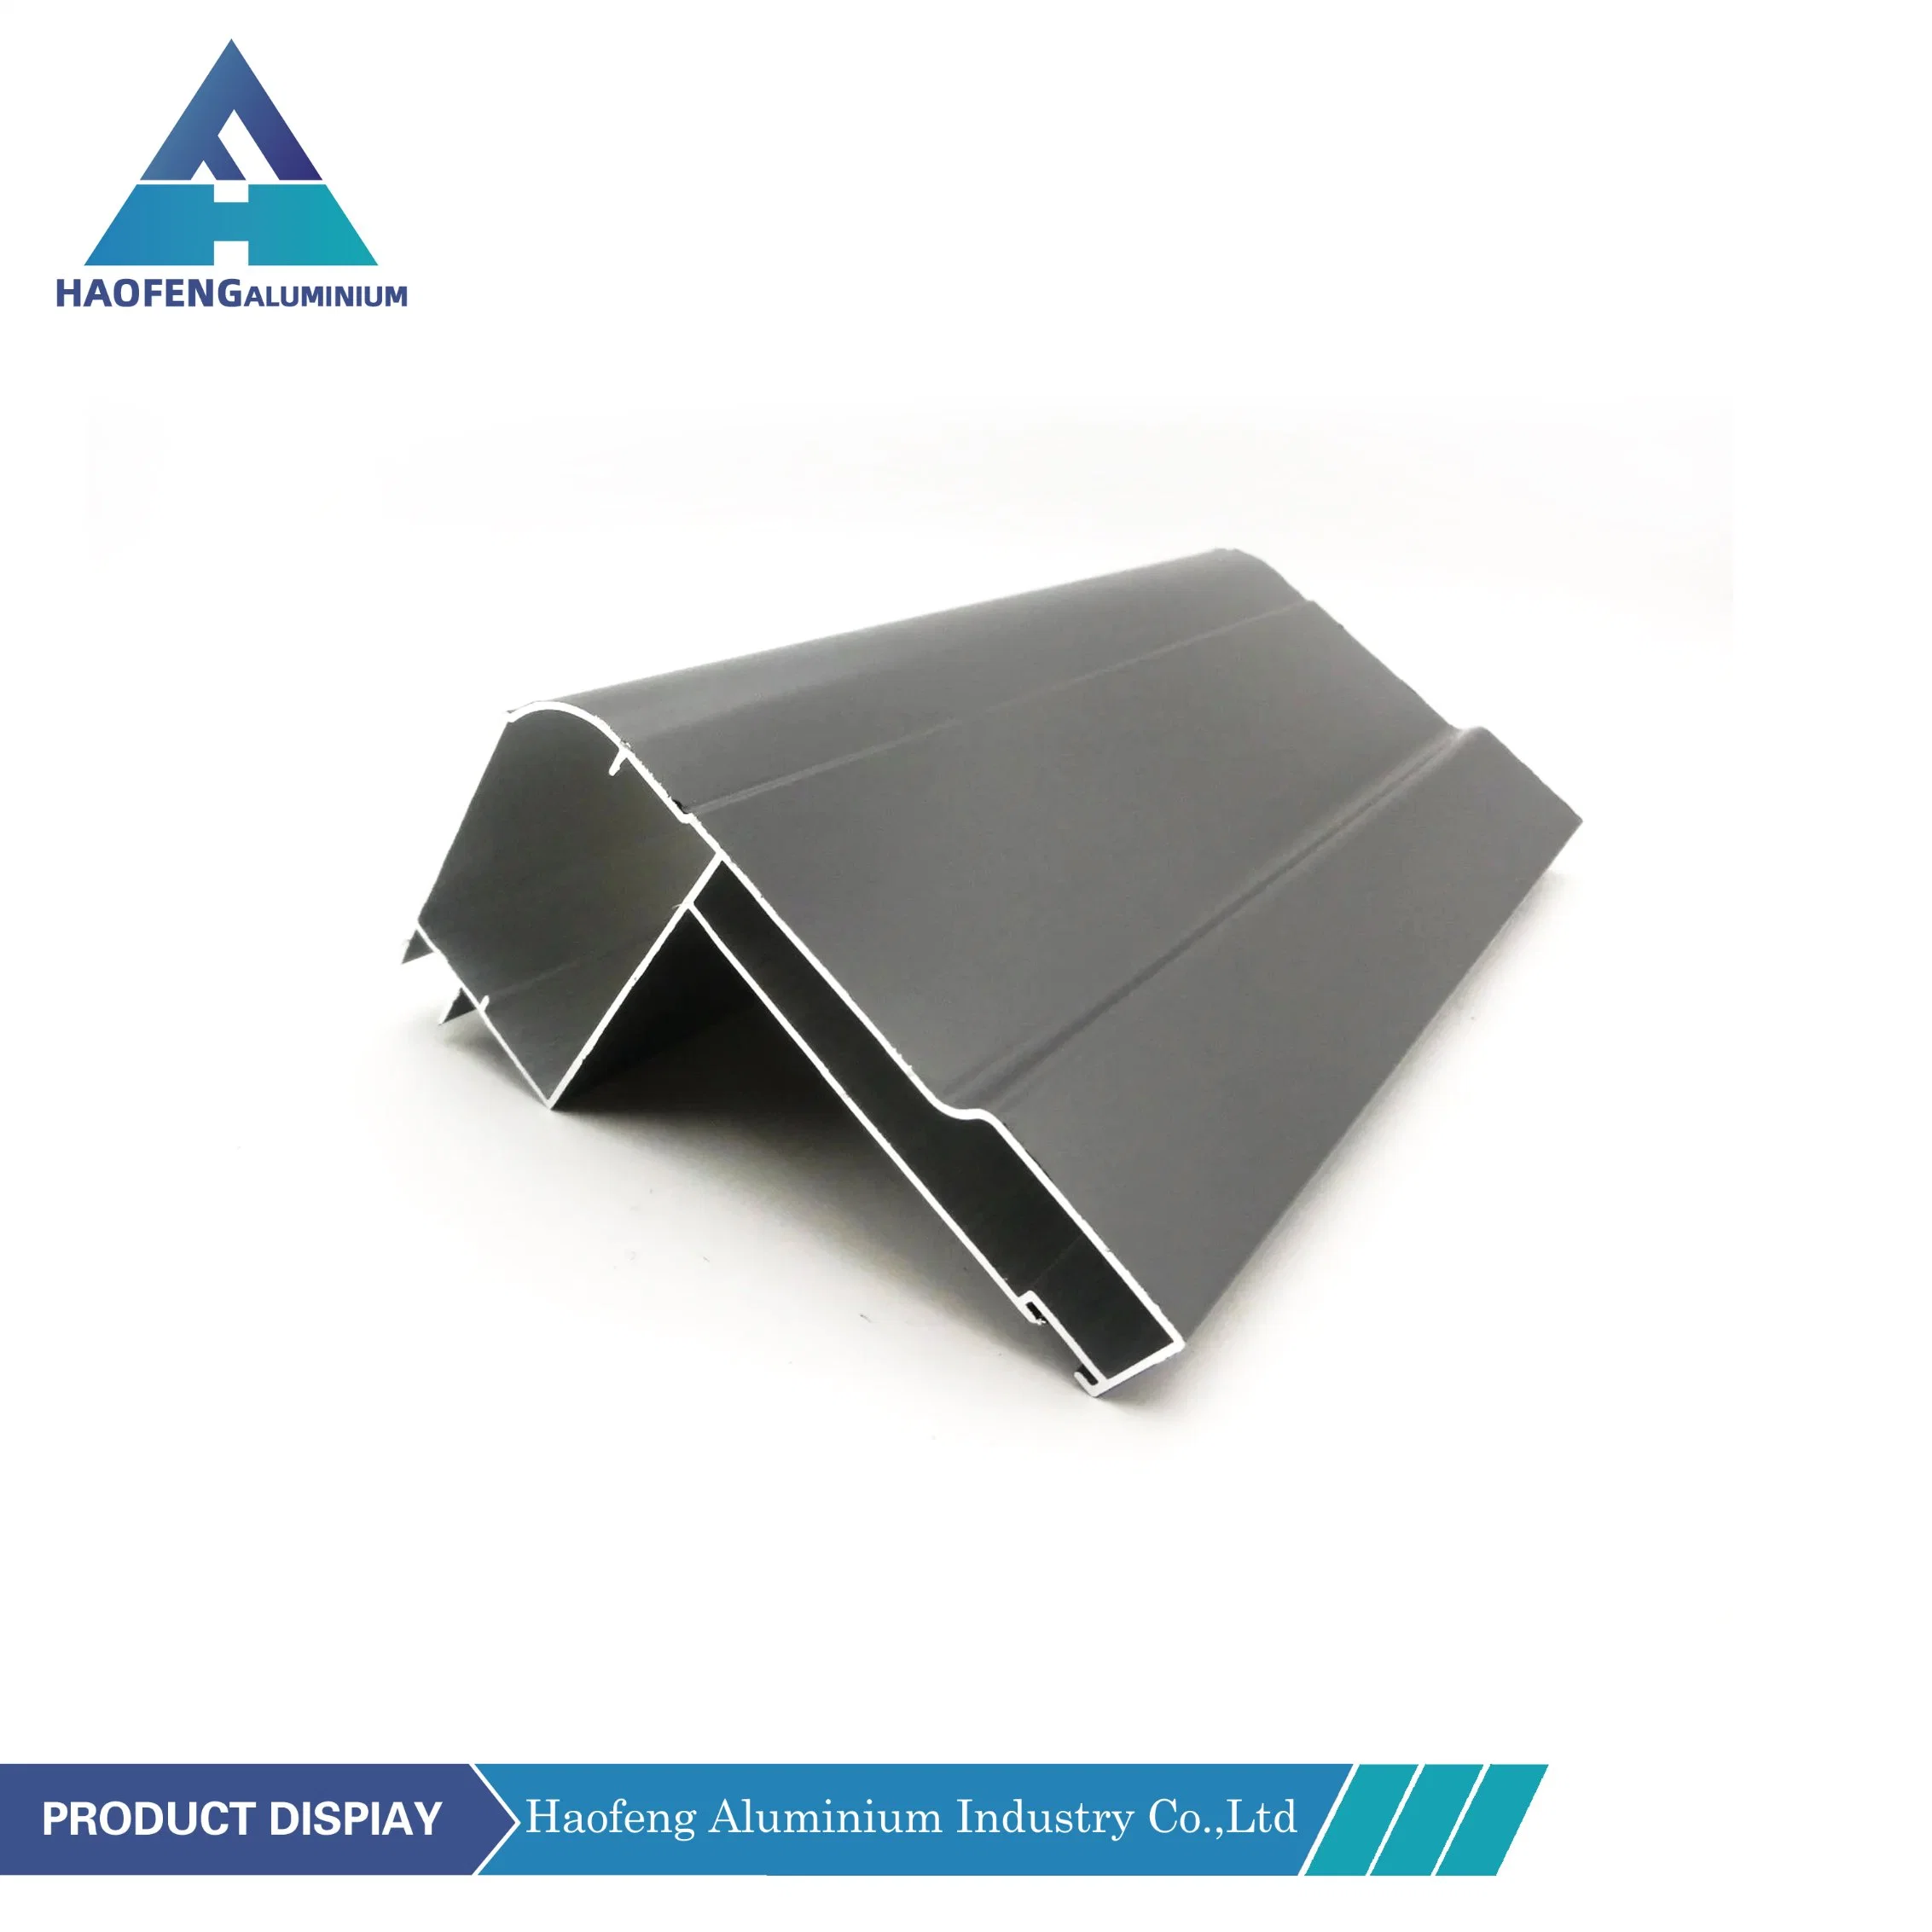 Amérique du Nord Shutter aluminium profil Pont brisé pousser et tirer Revêtement en poudre/PVDF profil de revêtement aluminium pour portes et fenêtres